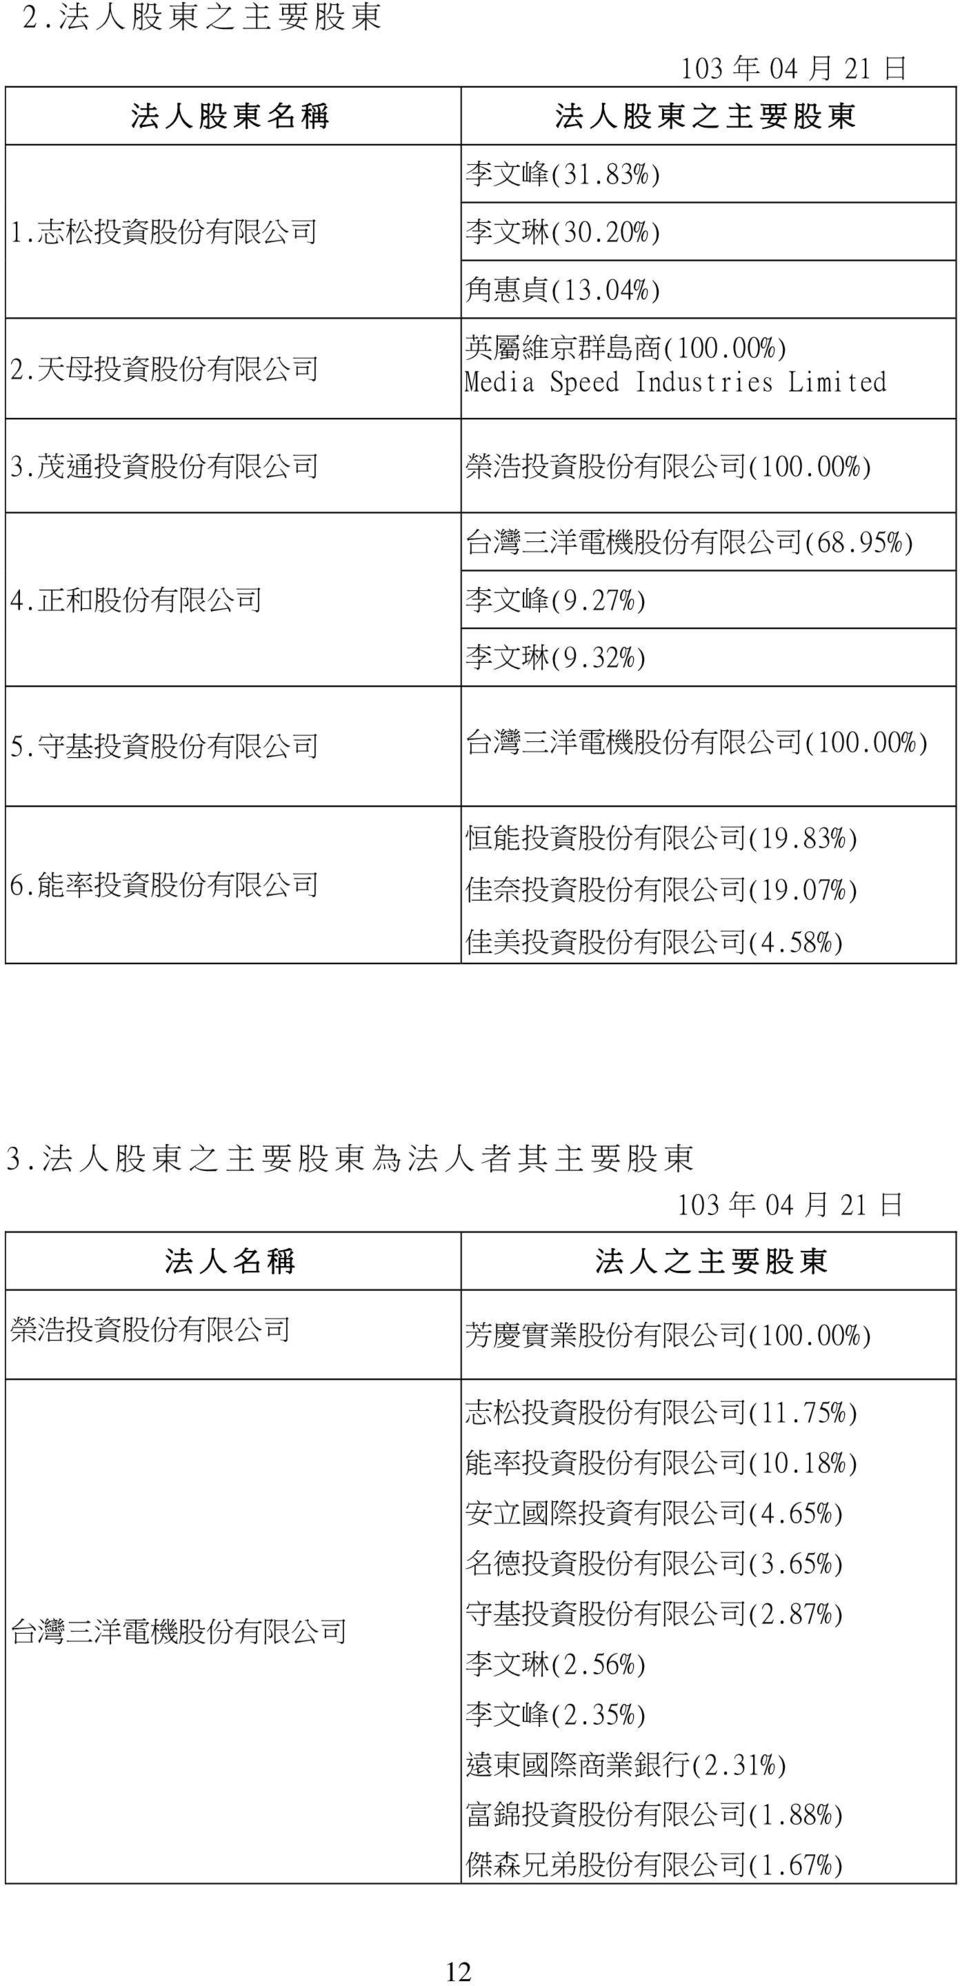 守 基 投 資 股 份 有 限 公 司 台 灣 三 洋 電 機 股 份 有 限 公 司 (100.00%) 6. 能 率 投 資 股 份 有 限 公 司 恒 能 投 資 股 份 有 限 公 司 (19.83%) 佳 奈 投 資 股 份 有 限 公 司 (19.07%) 佳 美 投 資 股 份 有 限 公 司 (4.58%) 3.